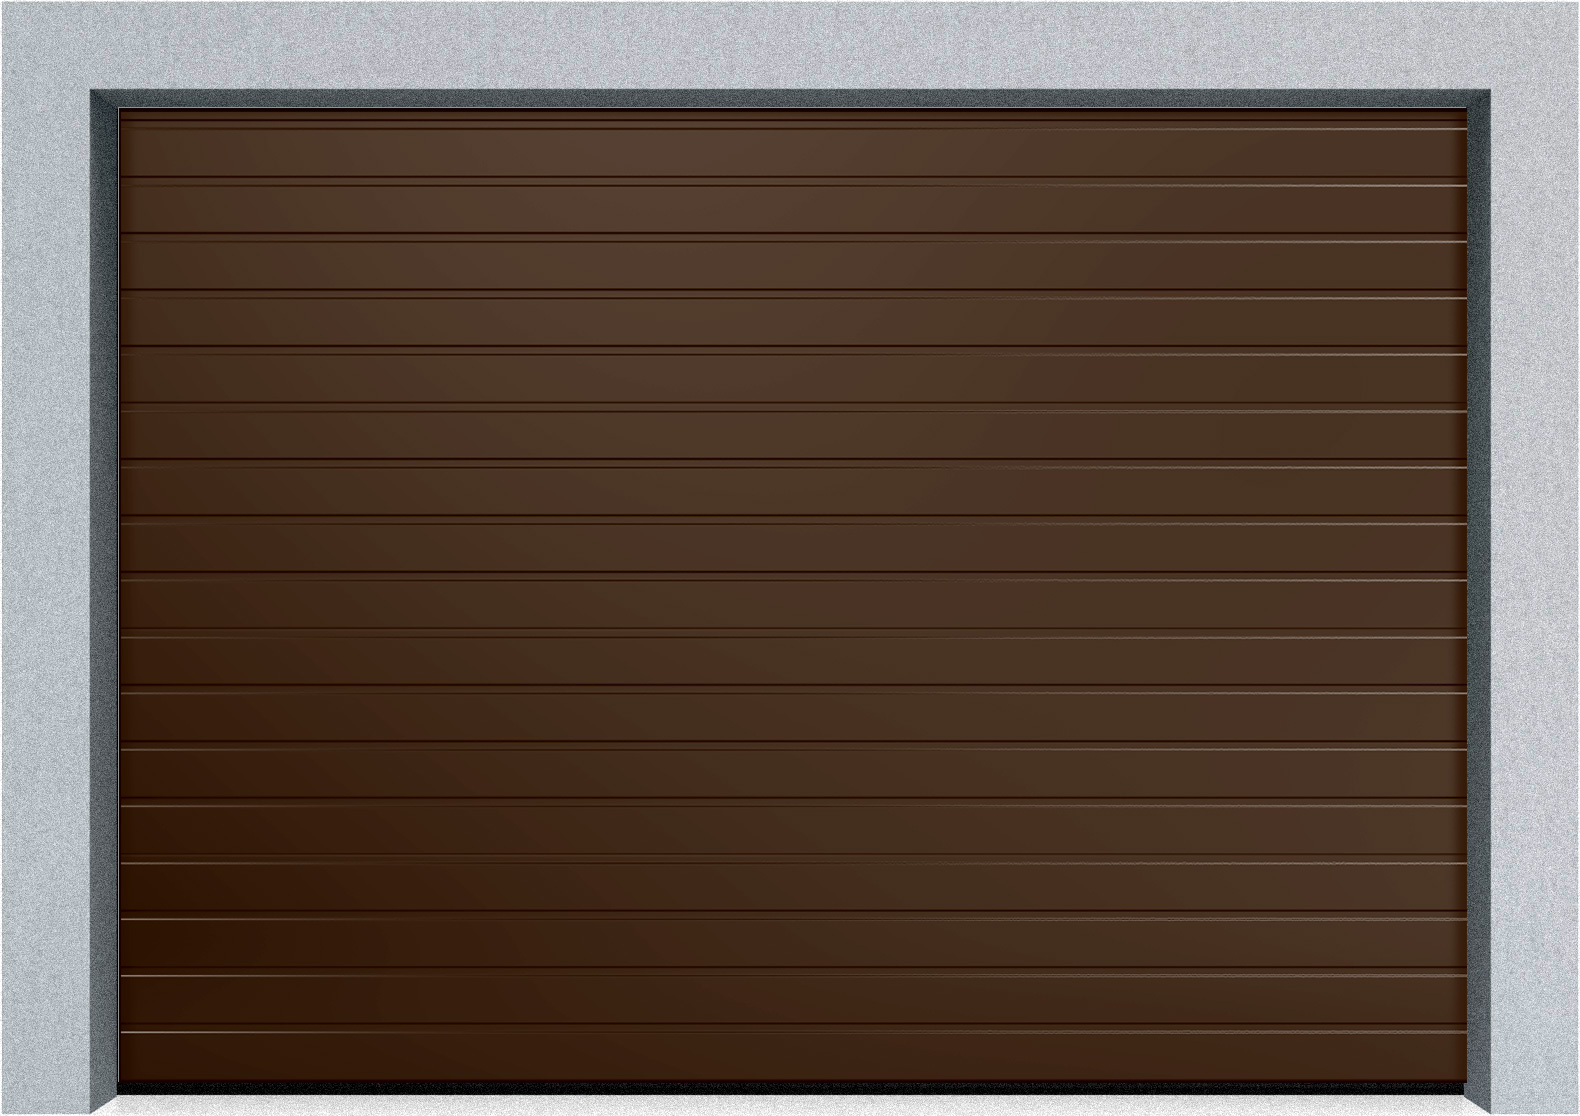  Секционные гаражные ворота DoorHan RSD01 2500x2000 S-гофр, M-гофр, Микроволна стандартные цвета, пружины растяжения, фото 2 